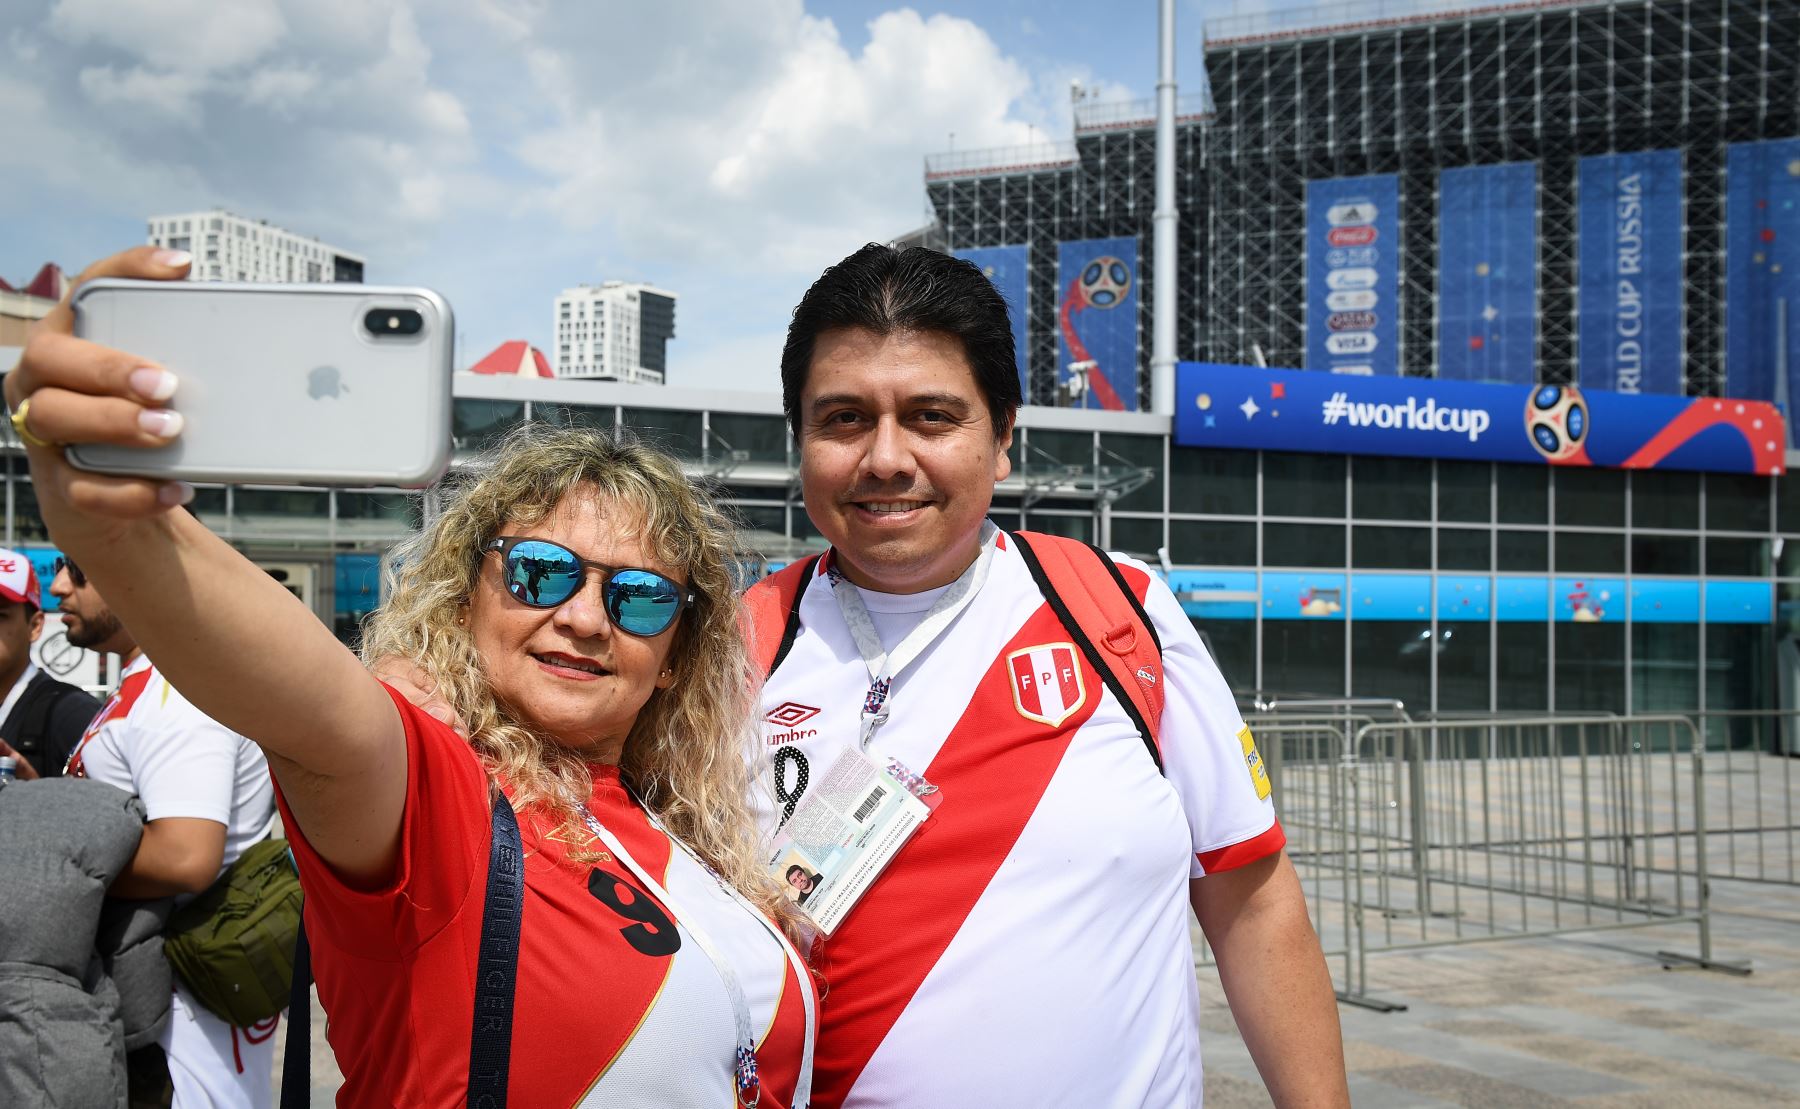 Los fanáticos peruanos se toman una selfie frente al estadio en Ekaterimburgo el 20 de junio de 2018 en la víspera del partido entre Francia y Perú, durante el torneo de fútbol de la Copa Mundial Rusia 2018. / EFE